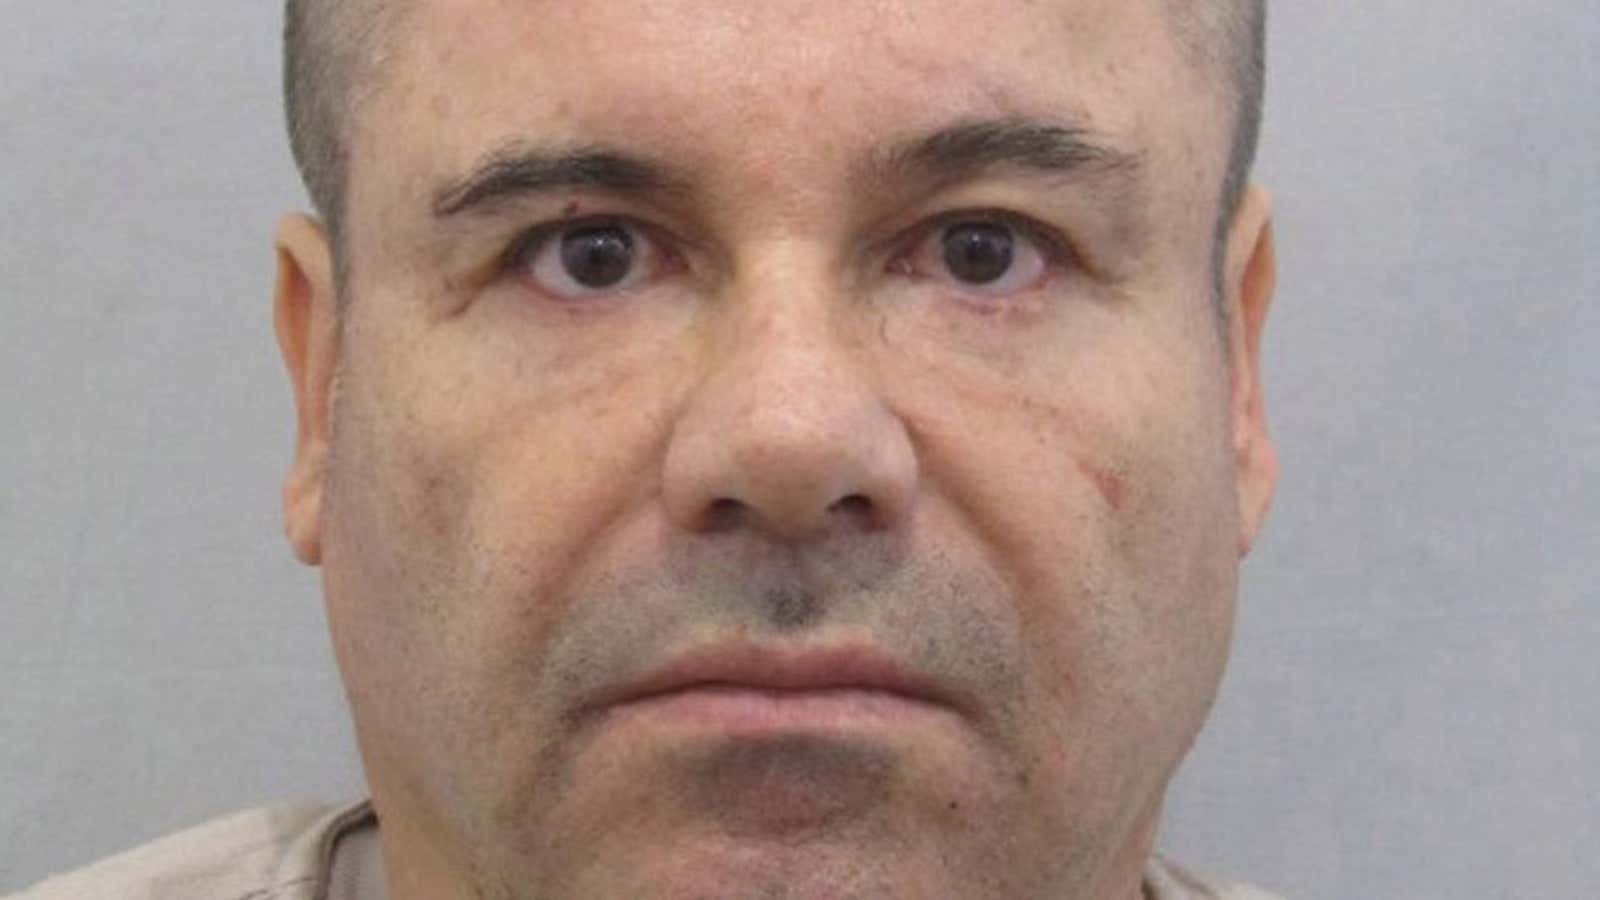 El Chapo’s looking at life behind bars.